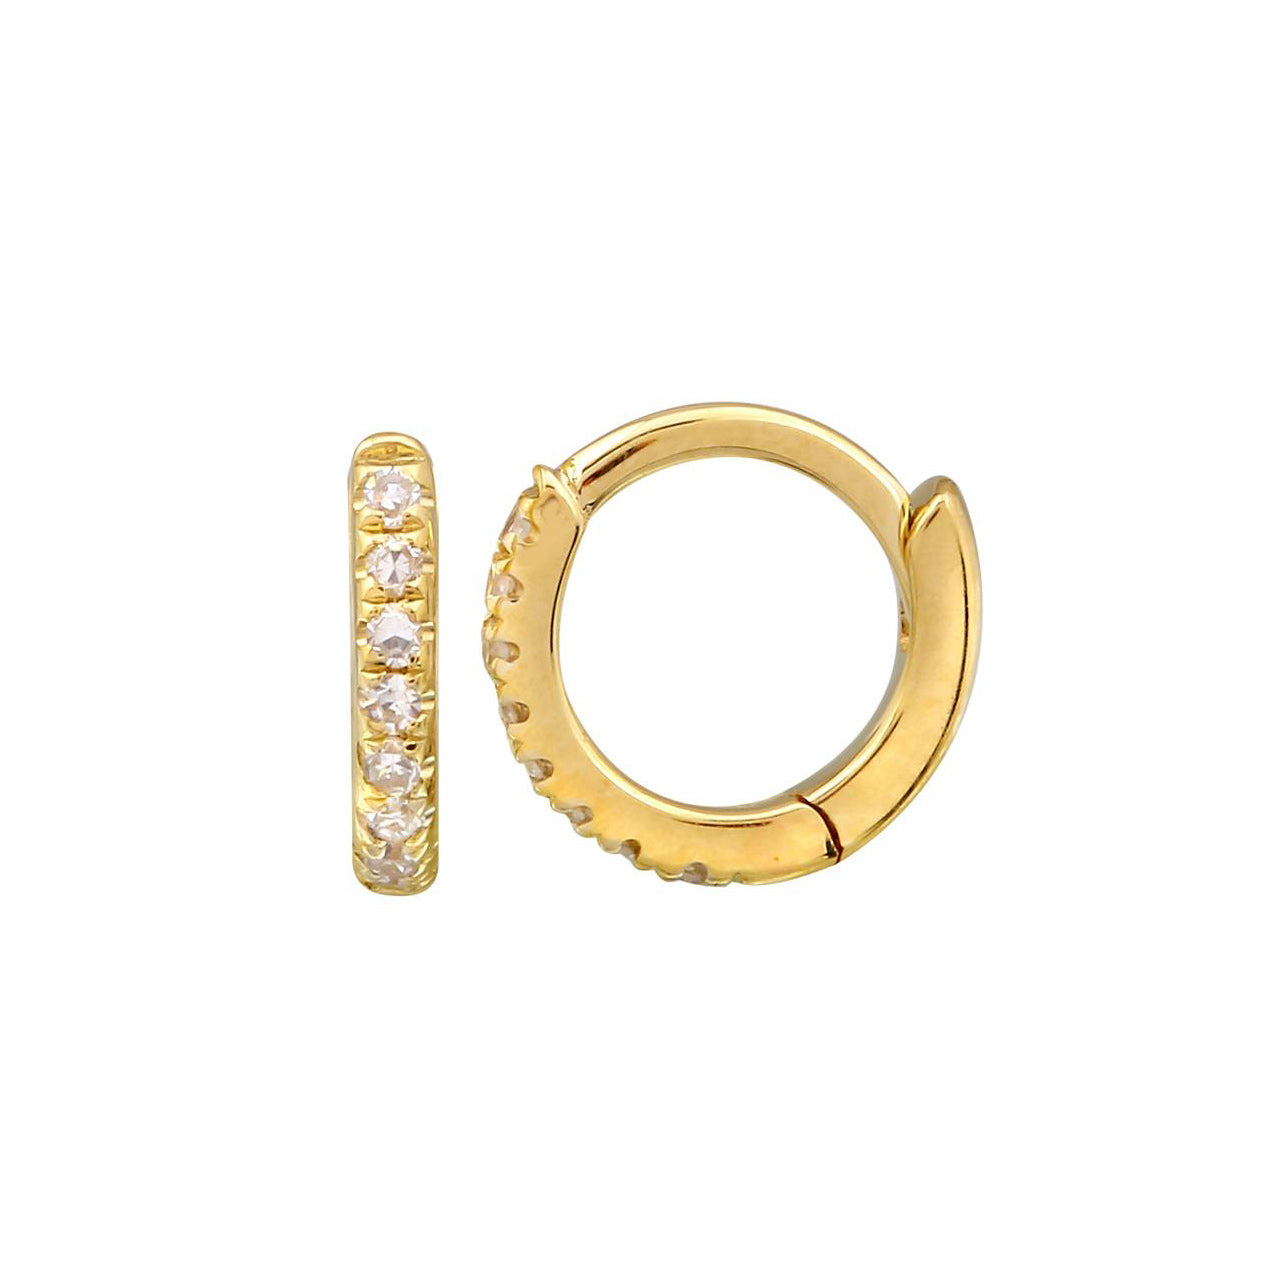 Kravit 14k Gold Mini Diamond Huggy Earrings-7mm